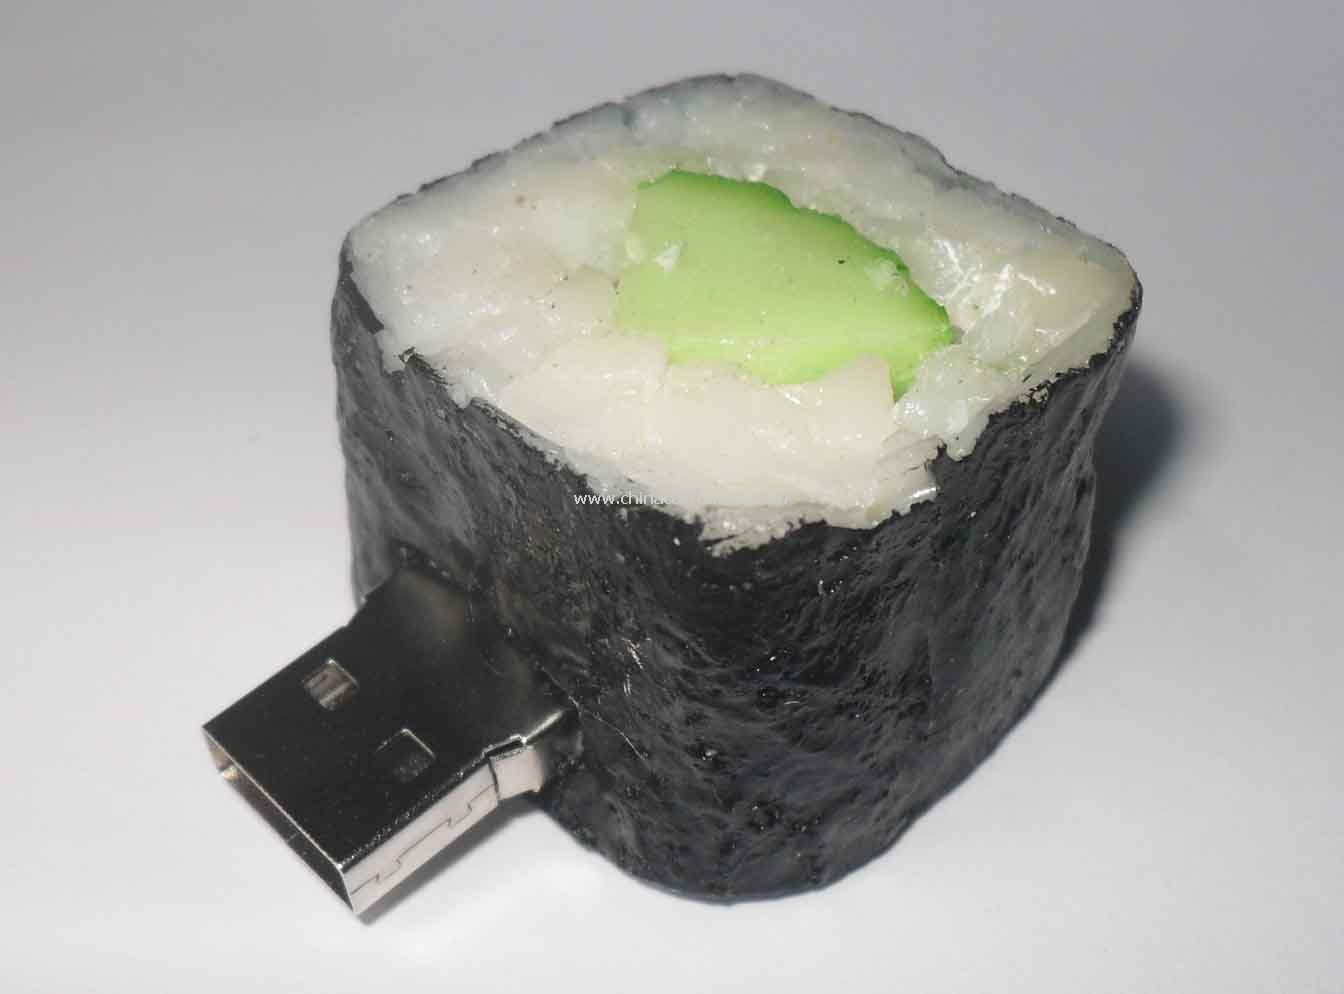 Sushi USB villanás hajt